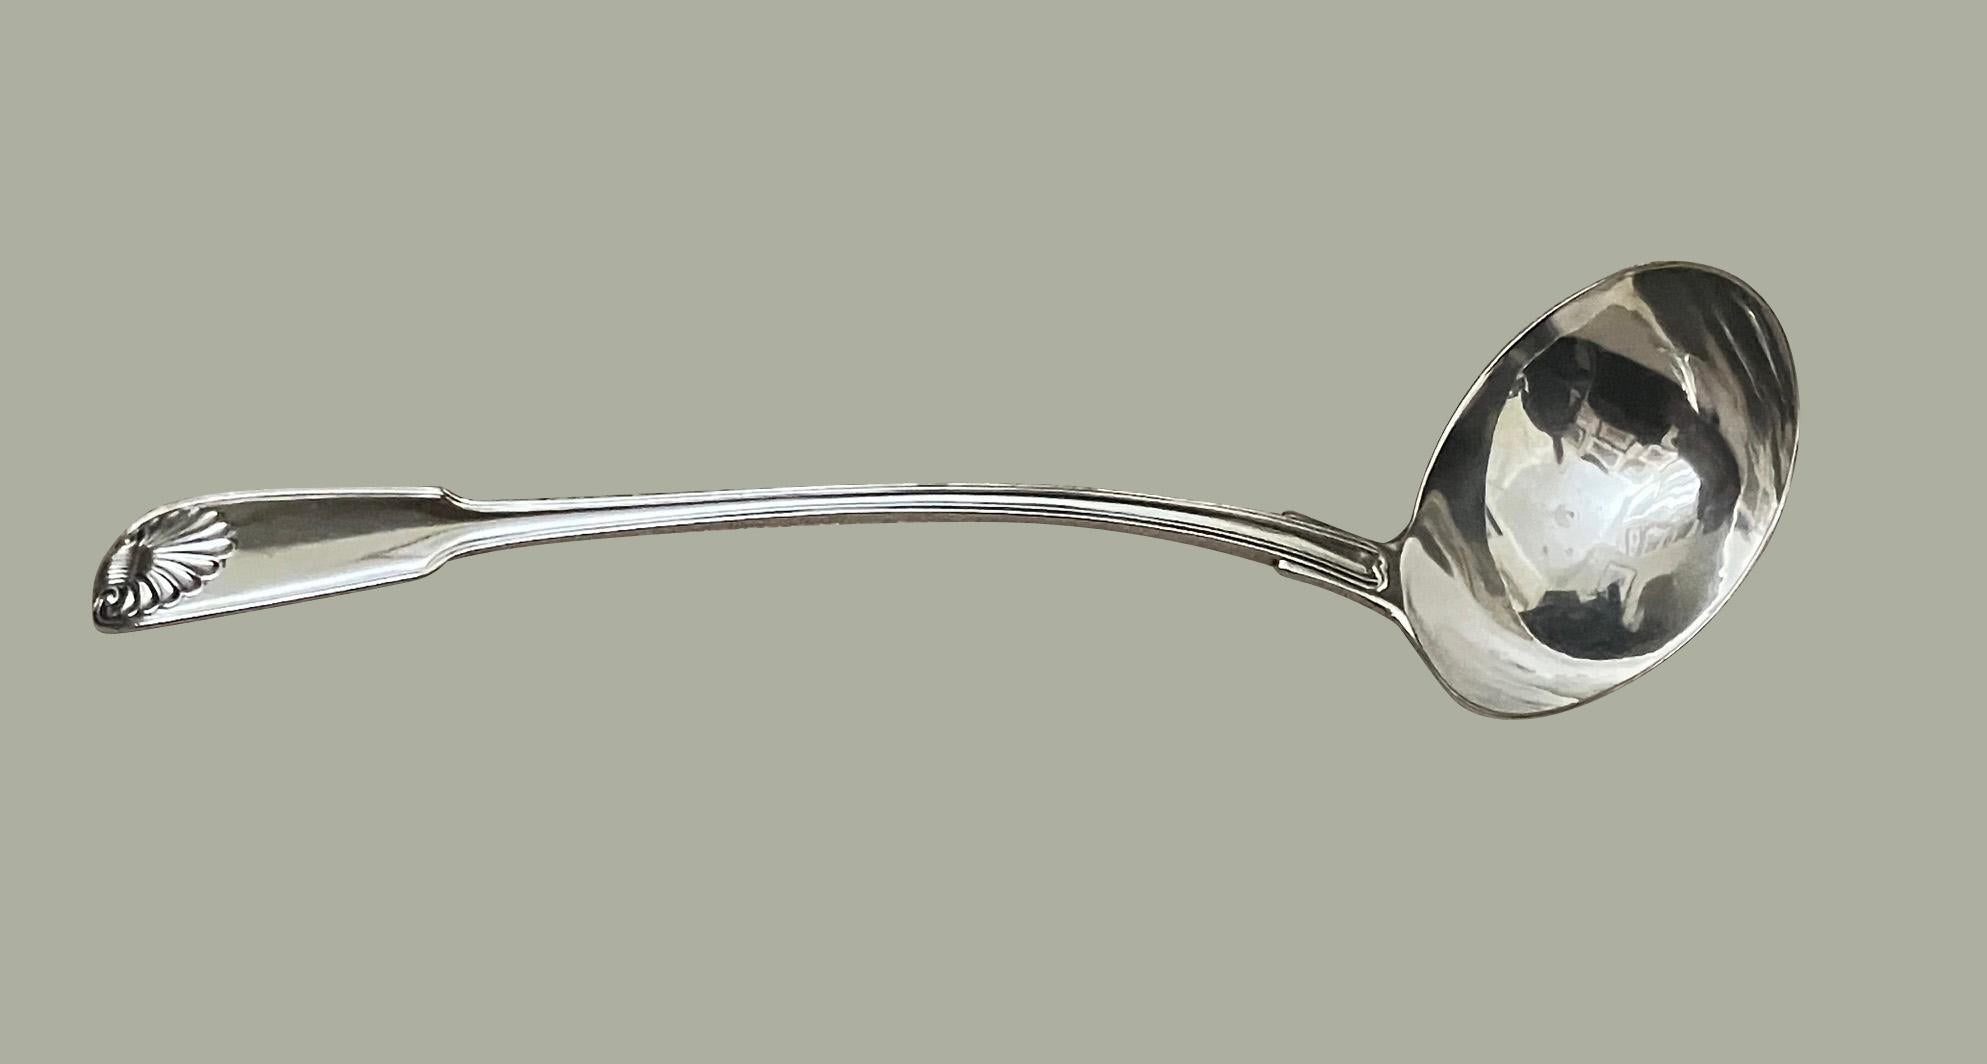 Une louche en argent sterling entièrement poinçonnée pour Londres et datée de 1817, réalisée par Paul Storr (1771-1844), l'un des deux plus célèbres orfèvres anglais de son époque. La louche pèse 274 grammes et présente le motif Fiddle and Shell.